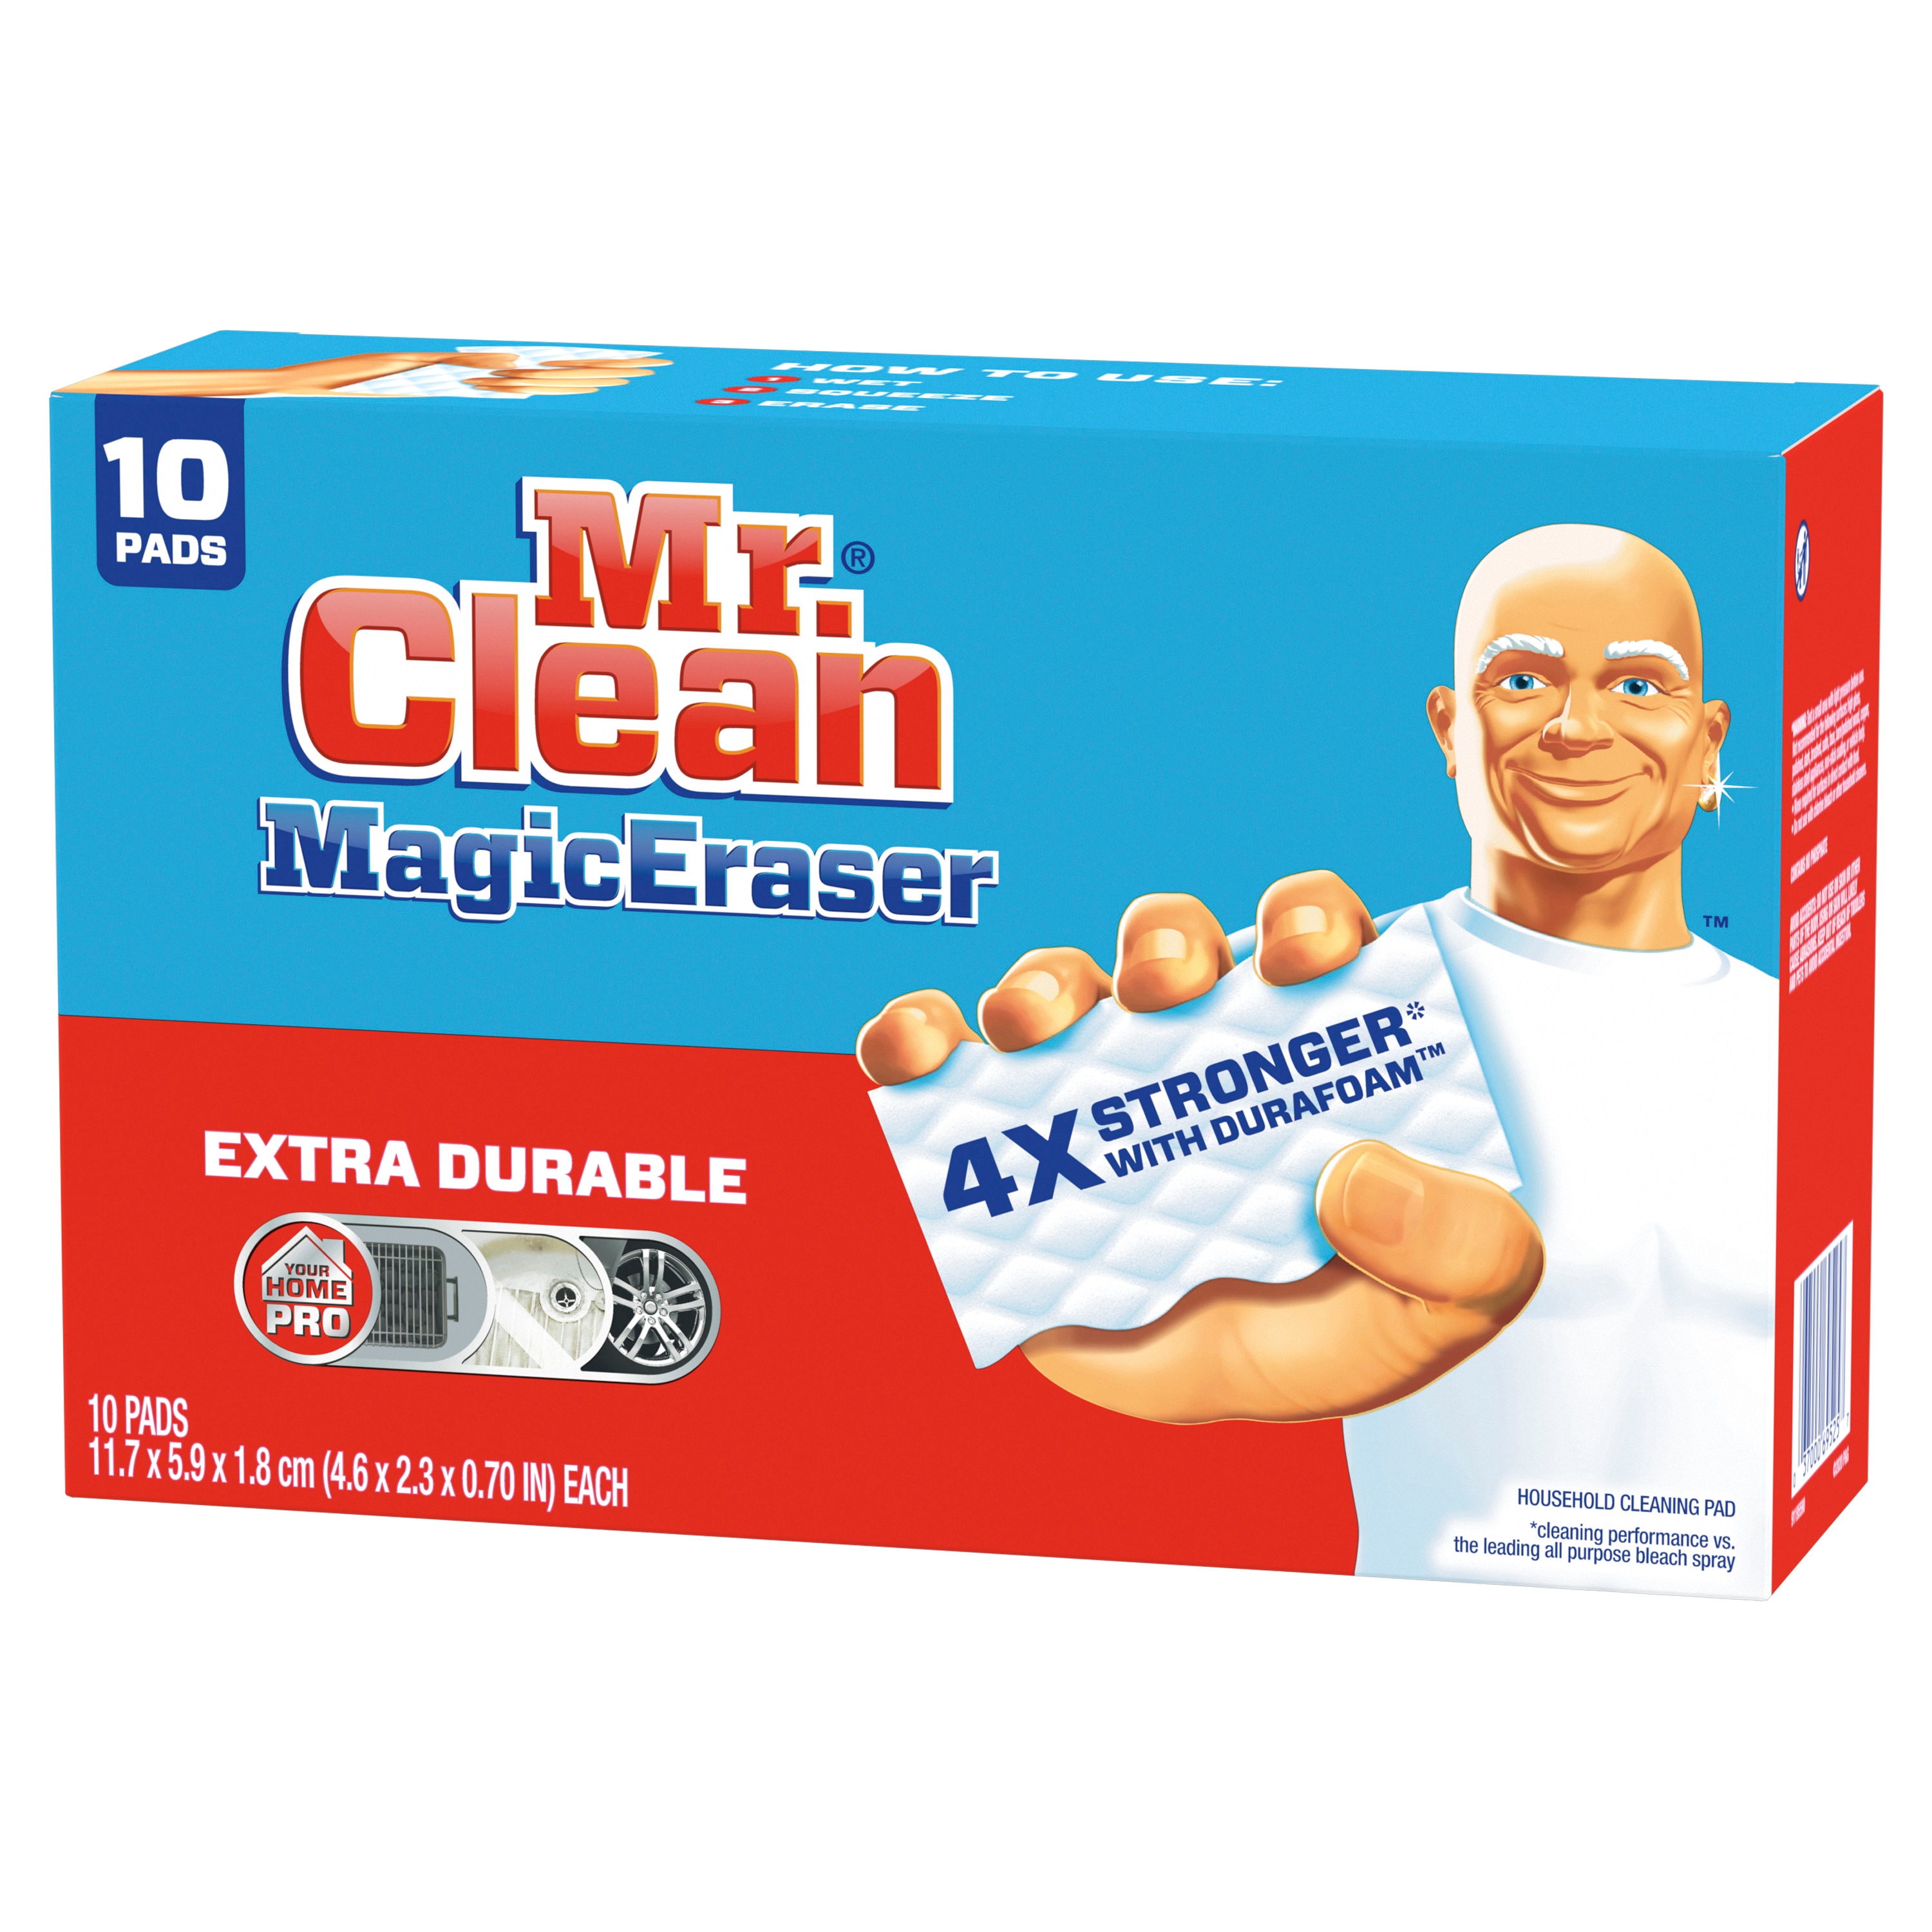 Băng tẩy sạch Melamine Mr. Clean 10-Pack trong danh mục bàn chải & mút tẩy trên Amazon.com là lựa chọn tuyệt vời để làm sạch căn phòng của bạn. Với khả năng tẩy sạch vượt trội và thiết kế tiện lợi, sản phẩm này sẽ giúp bạn tiết kiệm thời gian và công sức trong quá trình làm sạch. Chỉ cần một chút nước là bạn đã có thể làm sạch nhà cửa của mình.